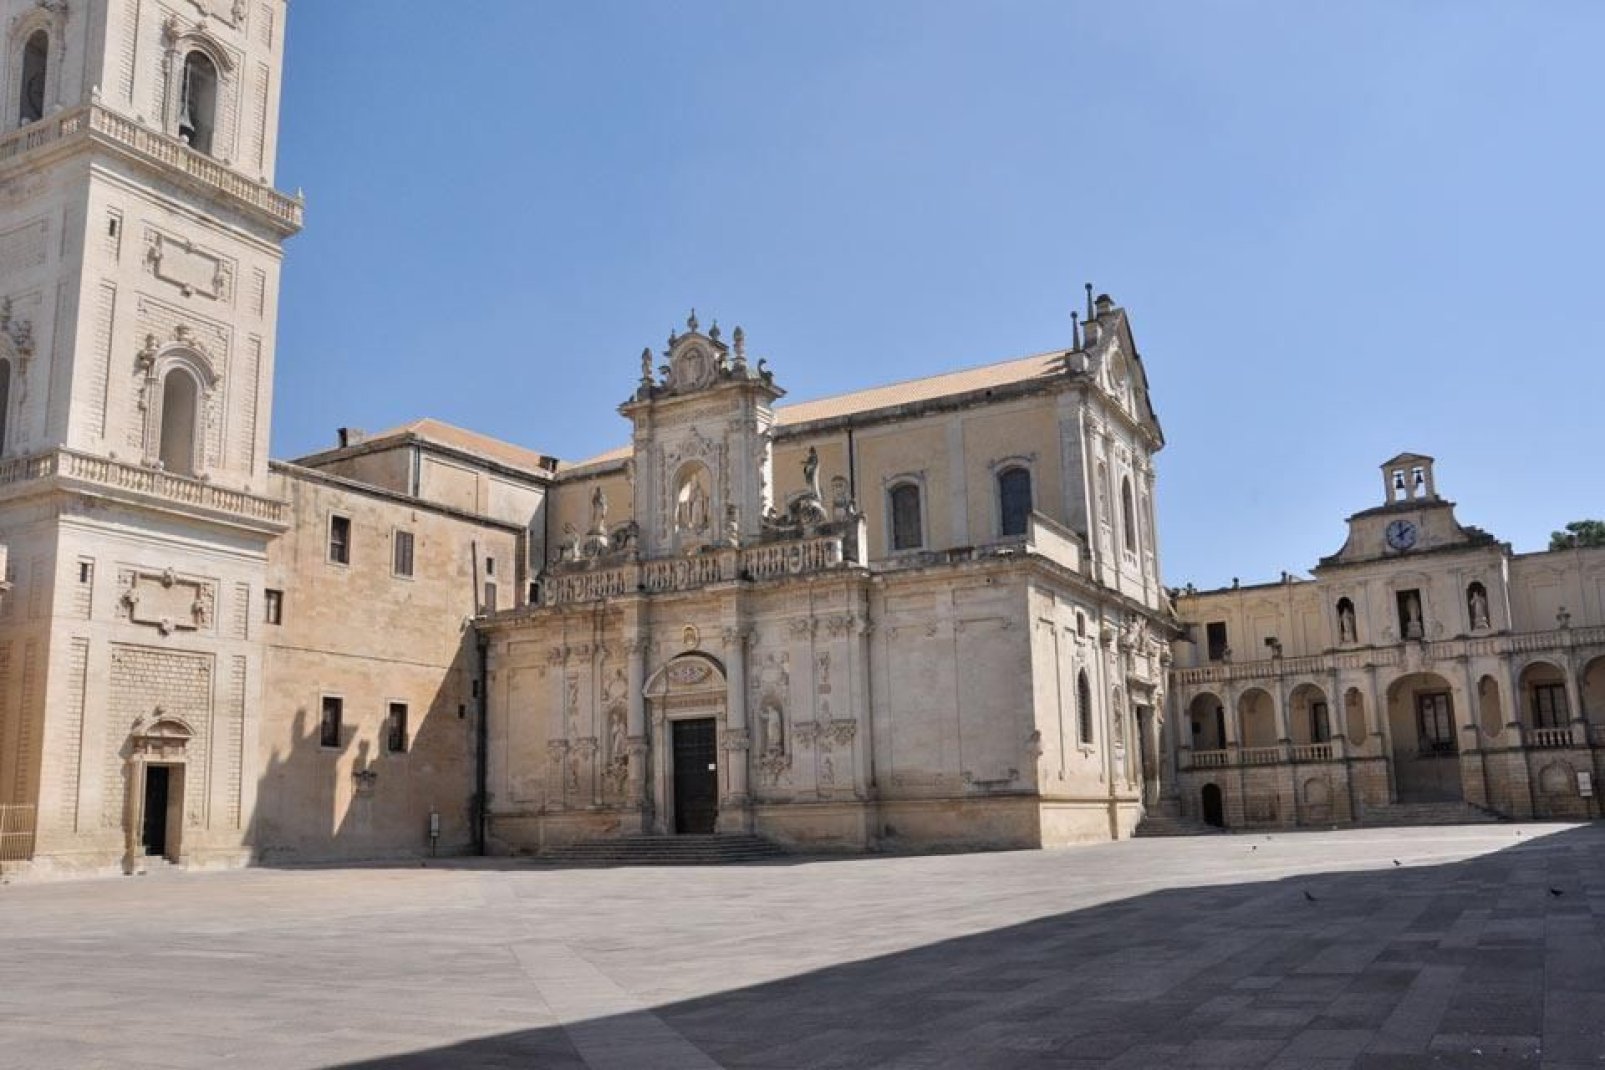 L'Évêché, adjacent à la Cathédrale, est la résidence de l'Évêque de Lecce. Ce Palais a été érigé au XVè siècle.